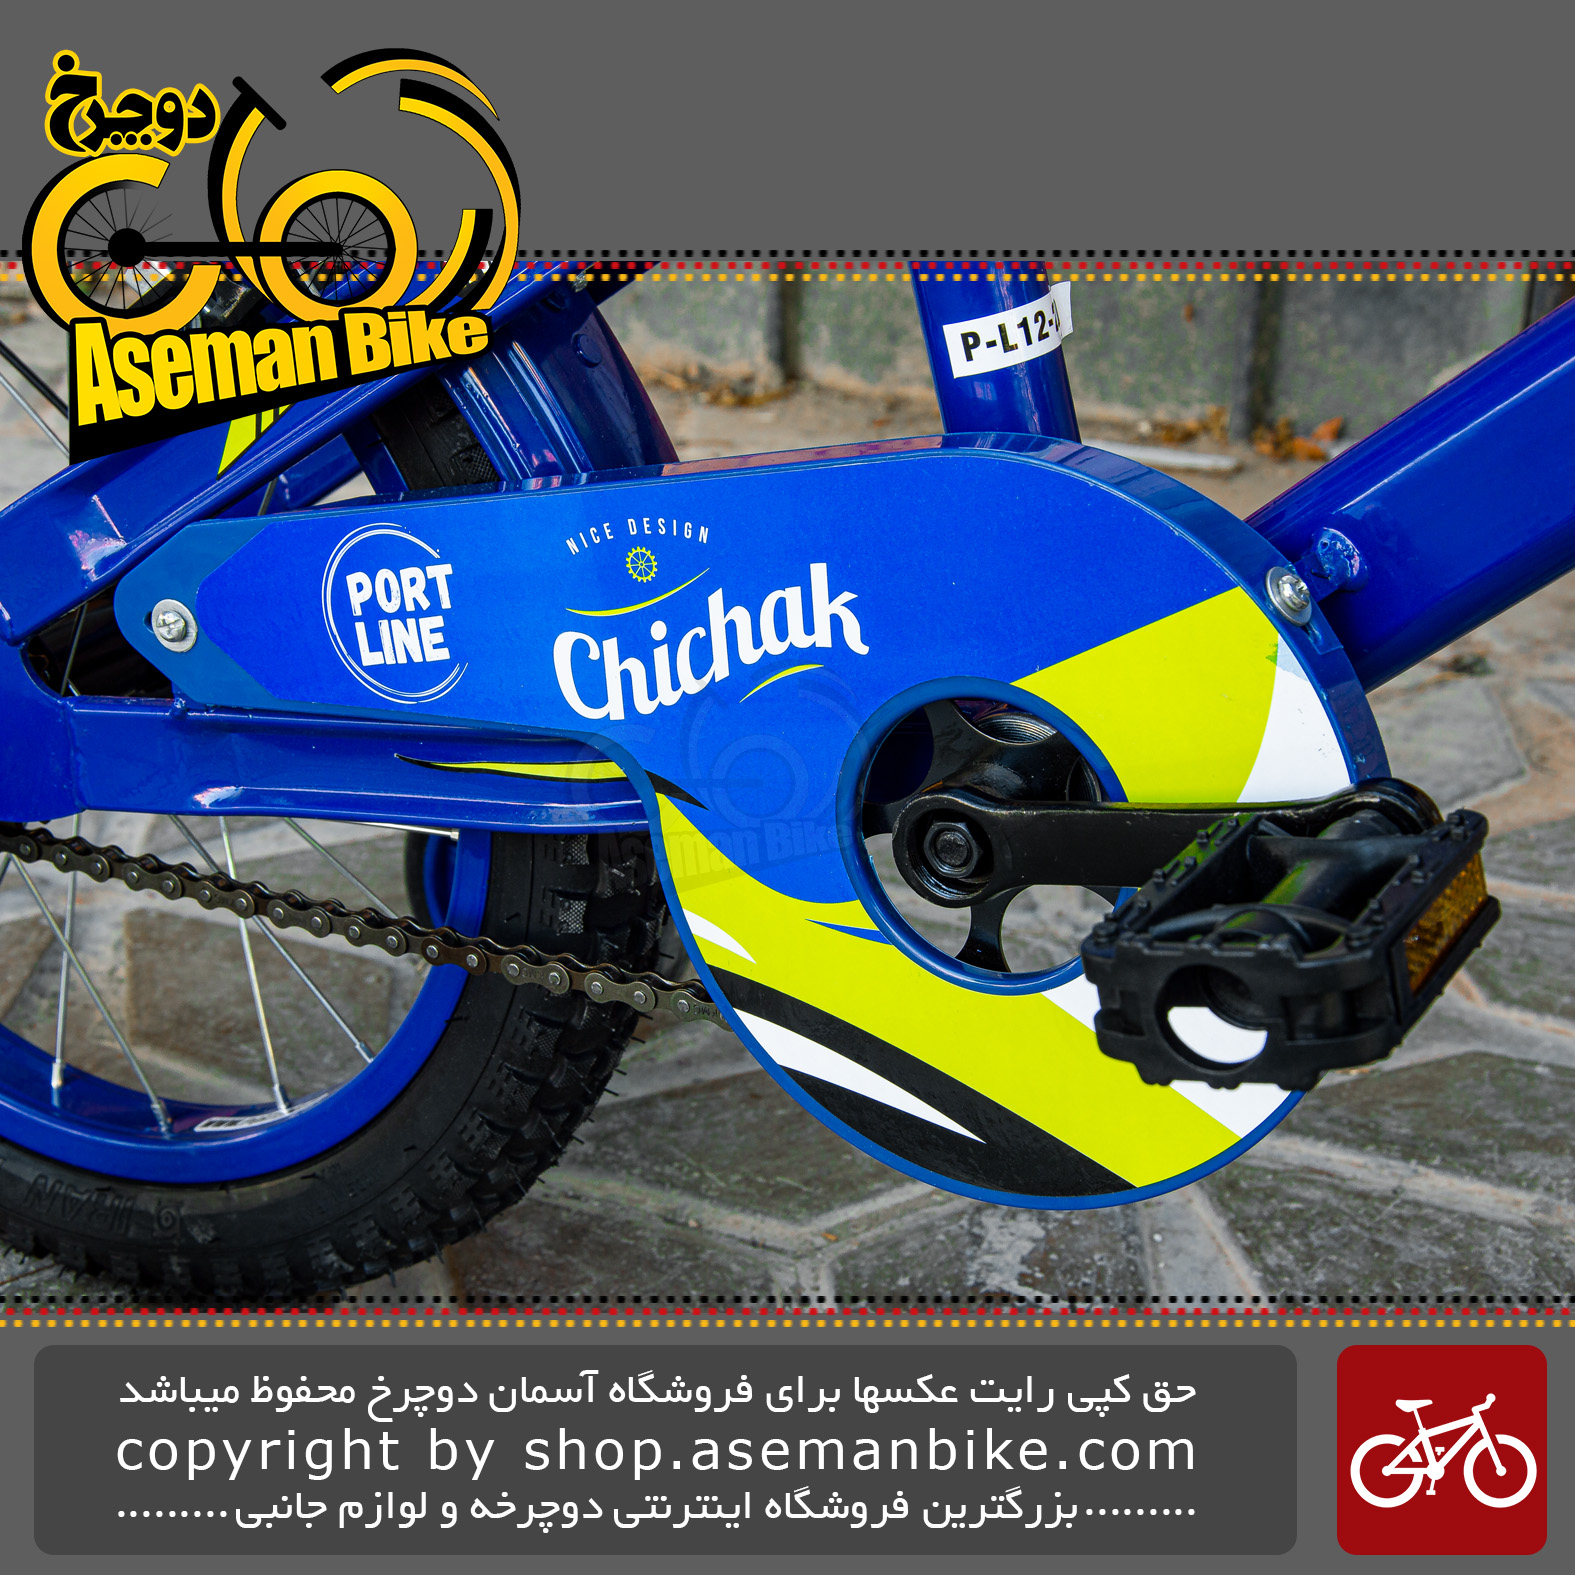 دوچرخه بچگانه برند پورت لاین مدل چیچک سایز 16 رنگ آبی Kids Bicycle Port Line Chichak Size 16 Blue